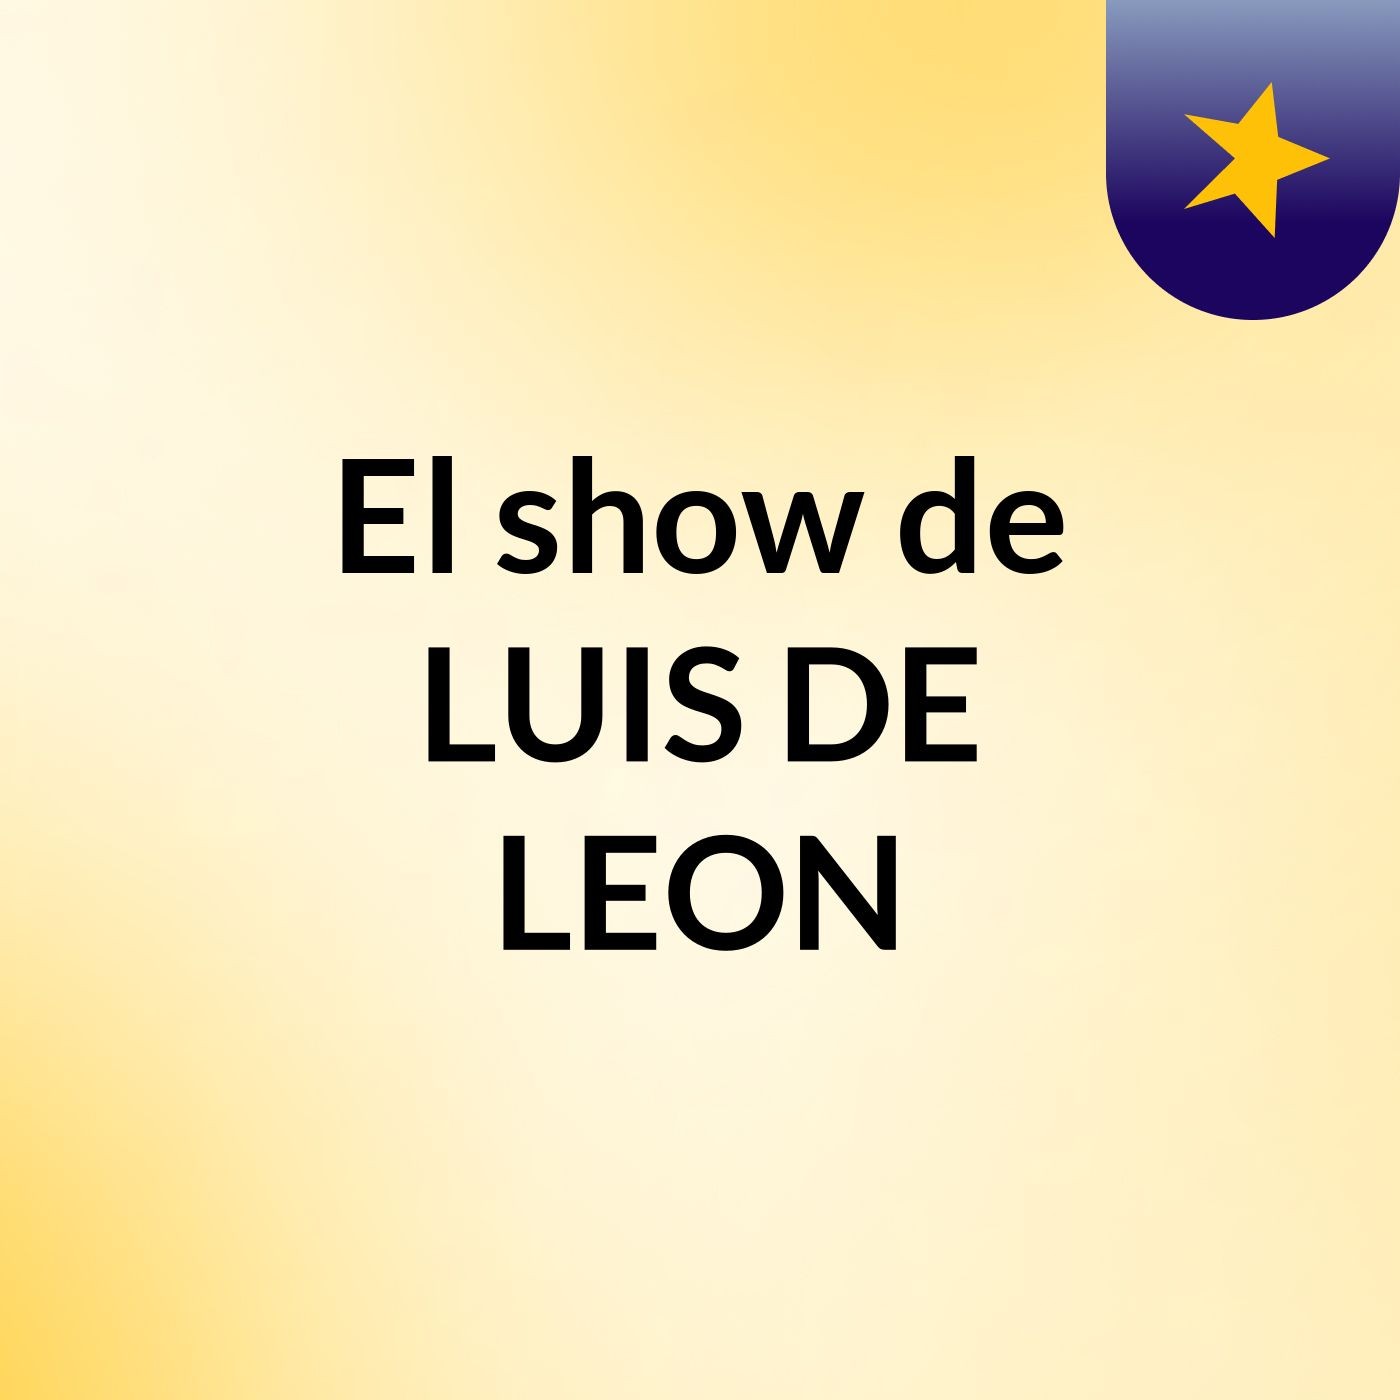 El show de LUIS DE LEON